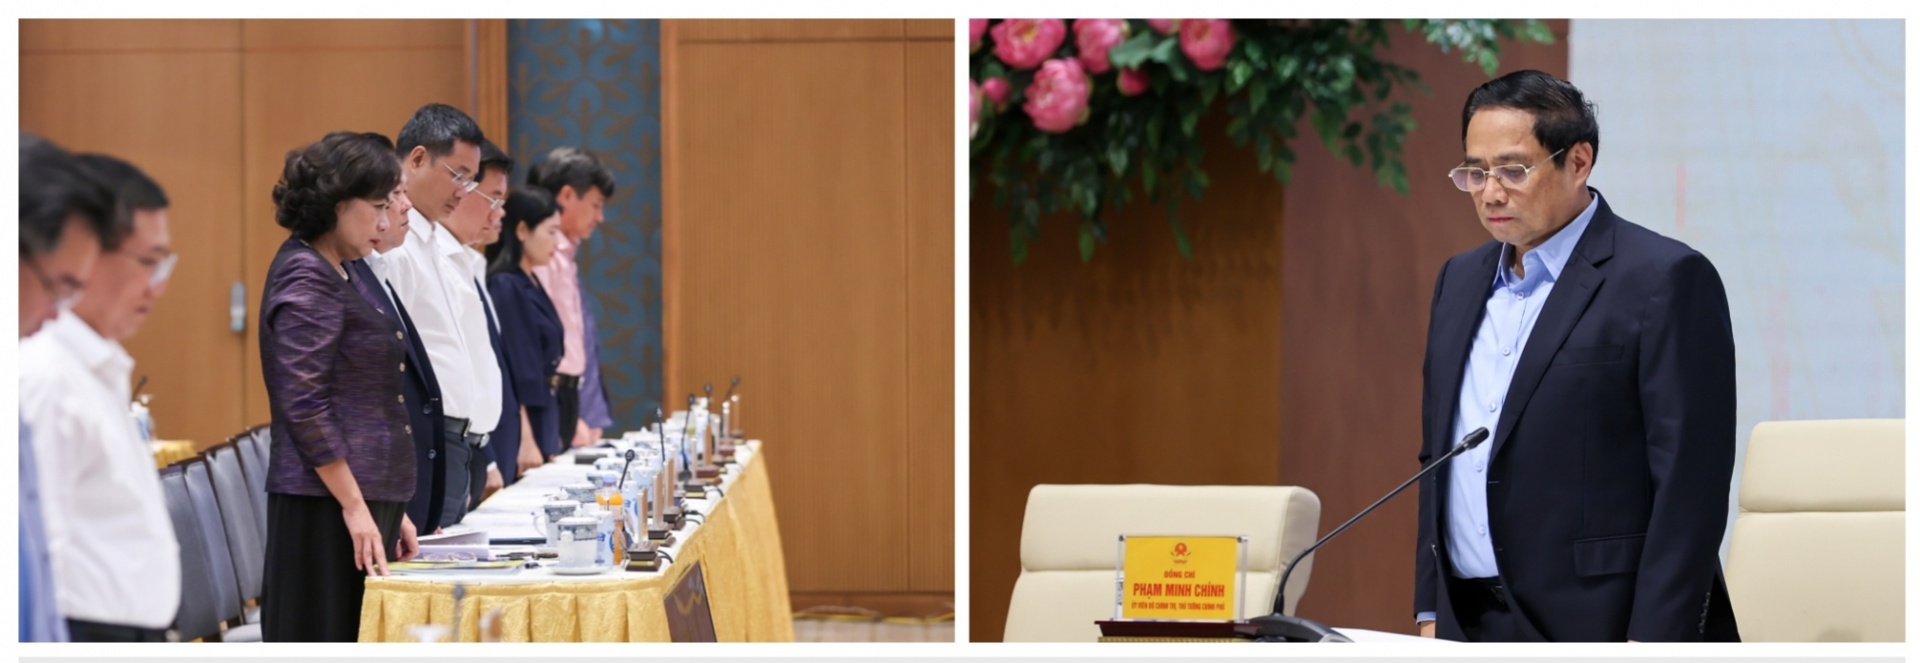 Thủ tướng Phạm Minh Chính và các đại biểu mặc niệm tưởng nhớ các nạn nhân tử vong trong vụ cháy tại Hà Nội và 7 nạn nhân tử vong do lũ quét tại Lào Cai đêm 12/9, rạng sáng 13/9 - Ảnh: VGP/Nhật Bắc